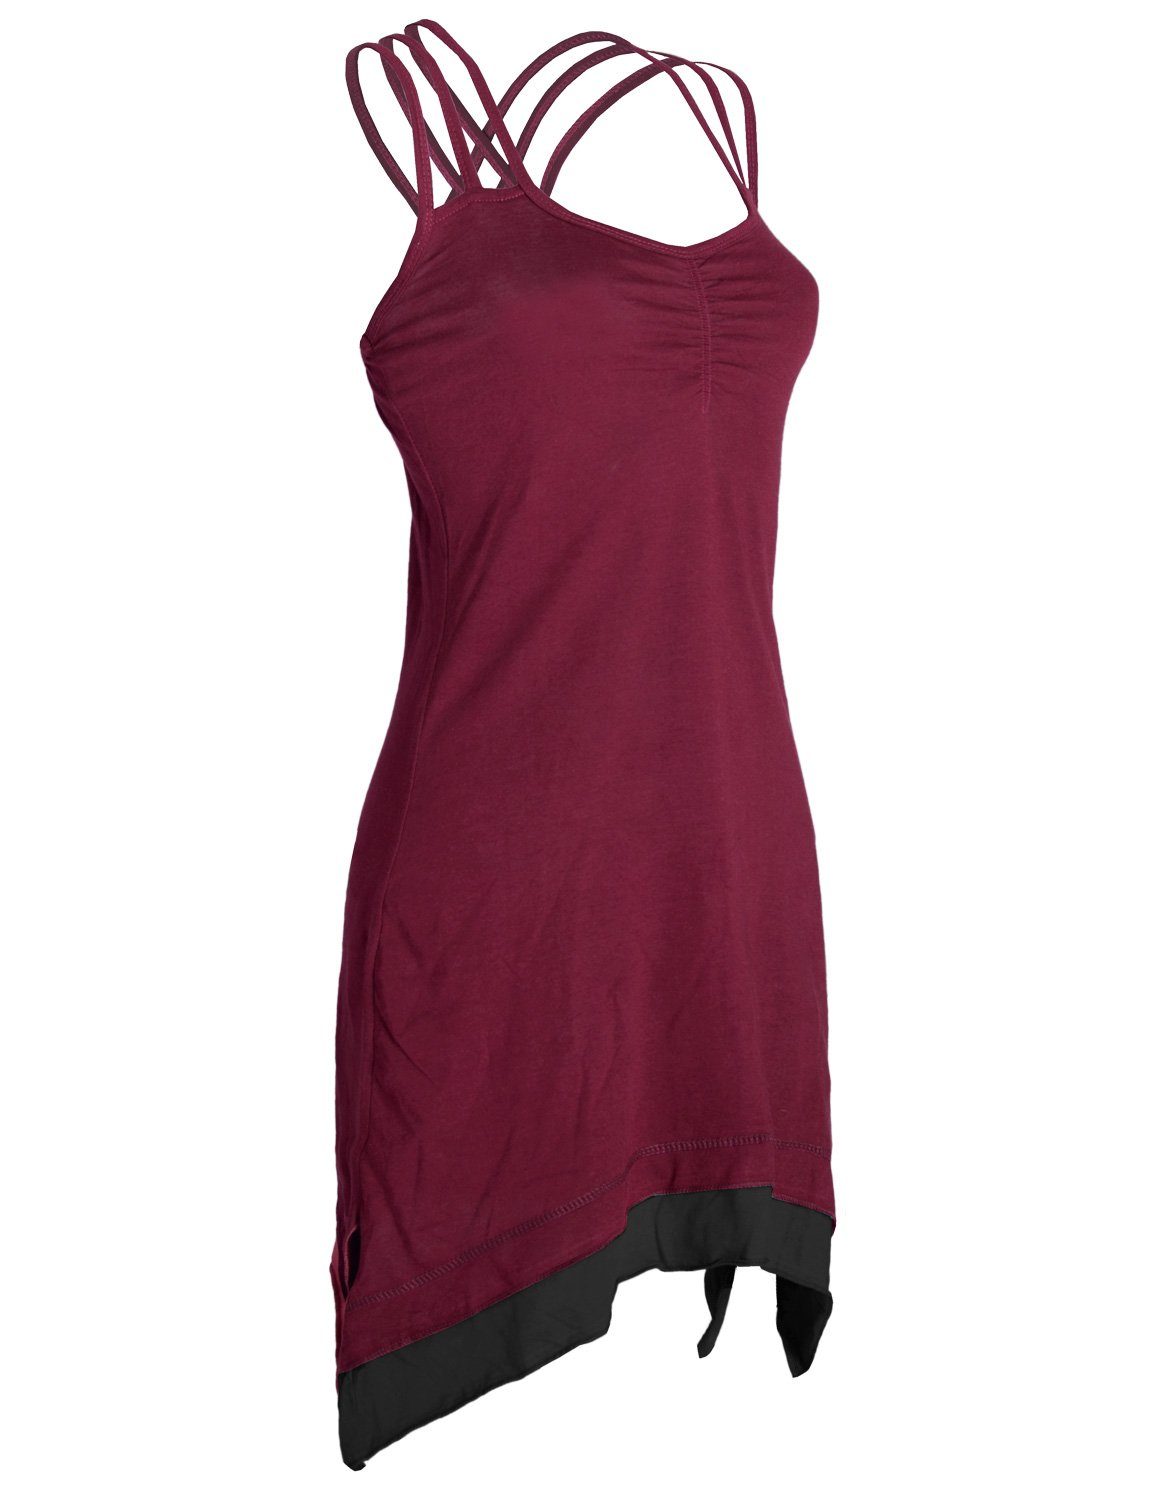 Vishes Sommerkleid Lagenlook Trägerkleid dunkelrot Zipfeln Hippie, Organic mit Cotton Style Boho Elfen